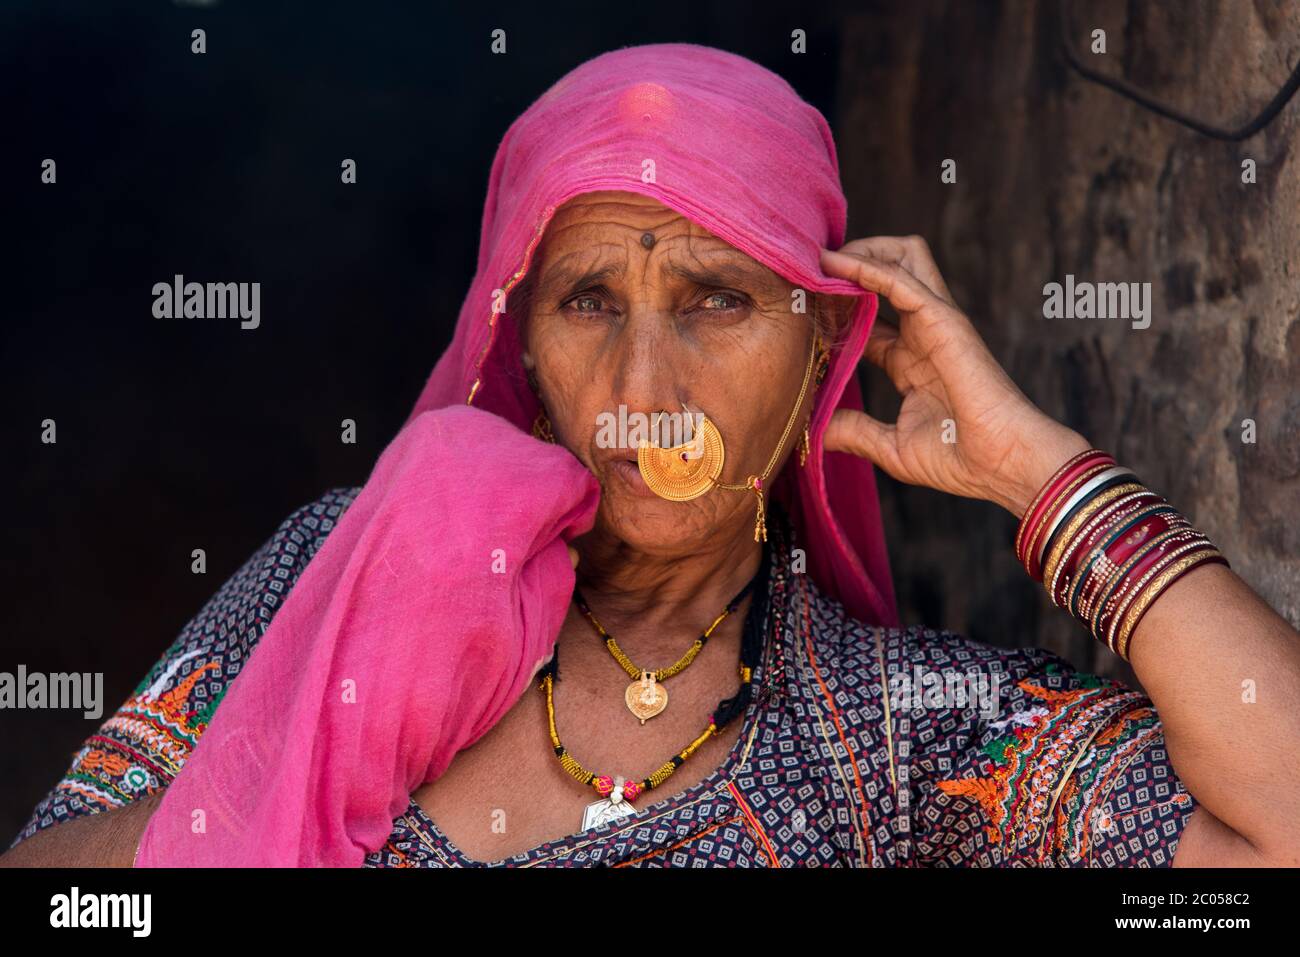 Une indienne habillée traditionnellement chez elle dans un village du Rajasthan, en Inde. Banque D'Images